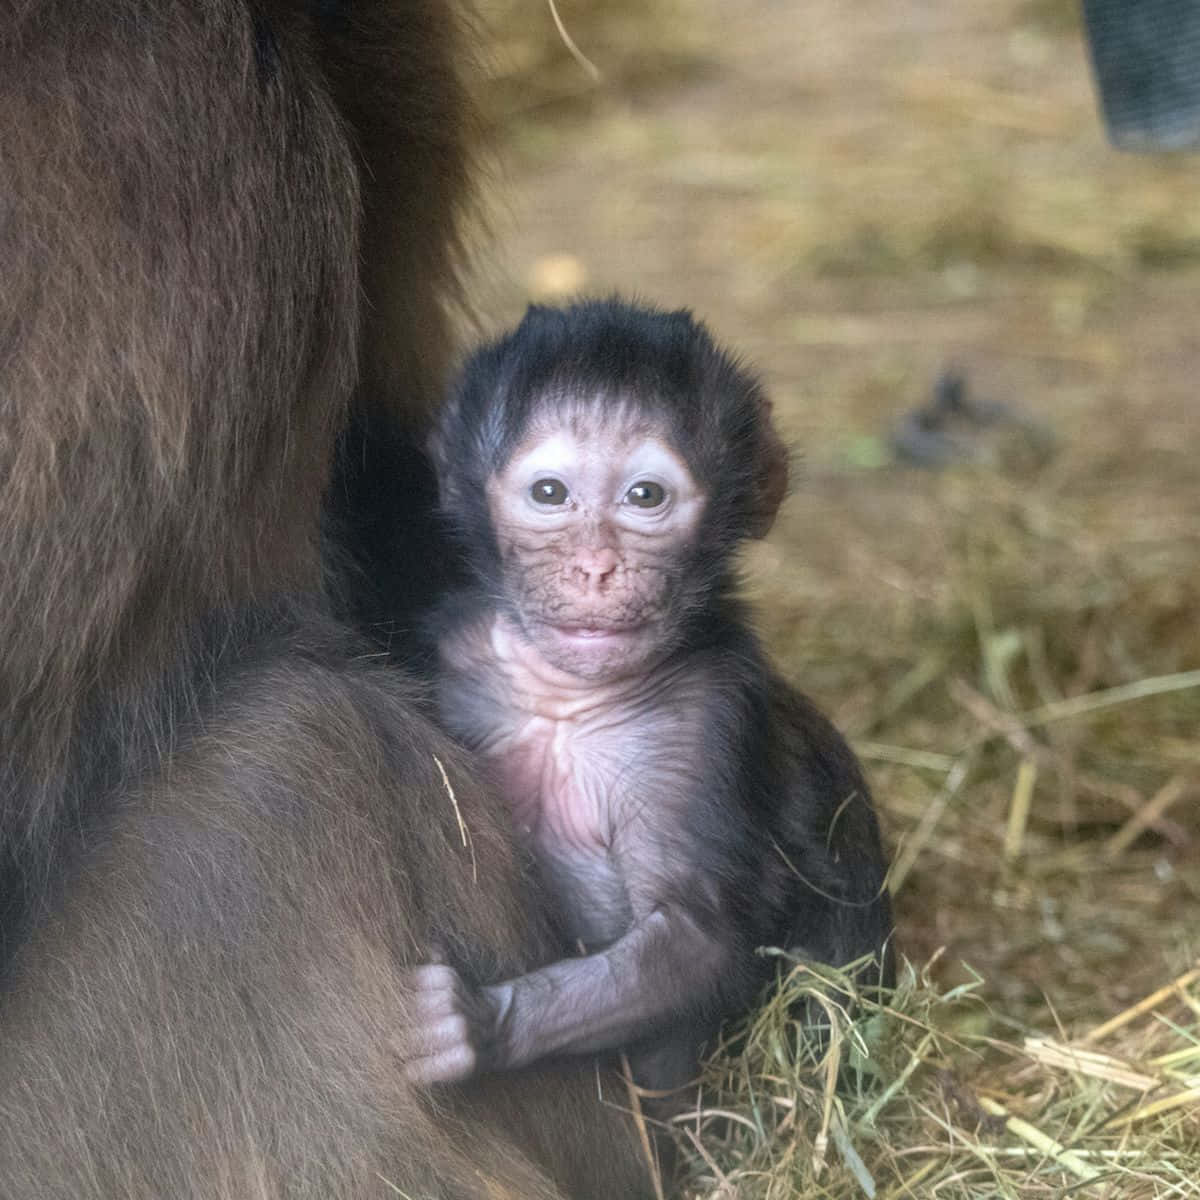 “Adorable Baby Monkey”